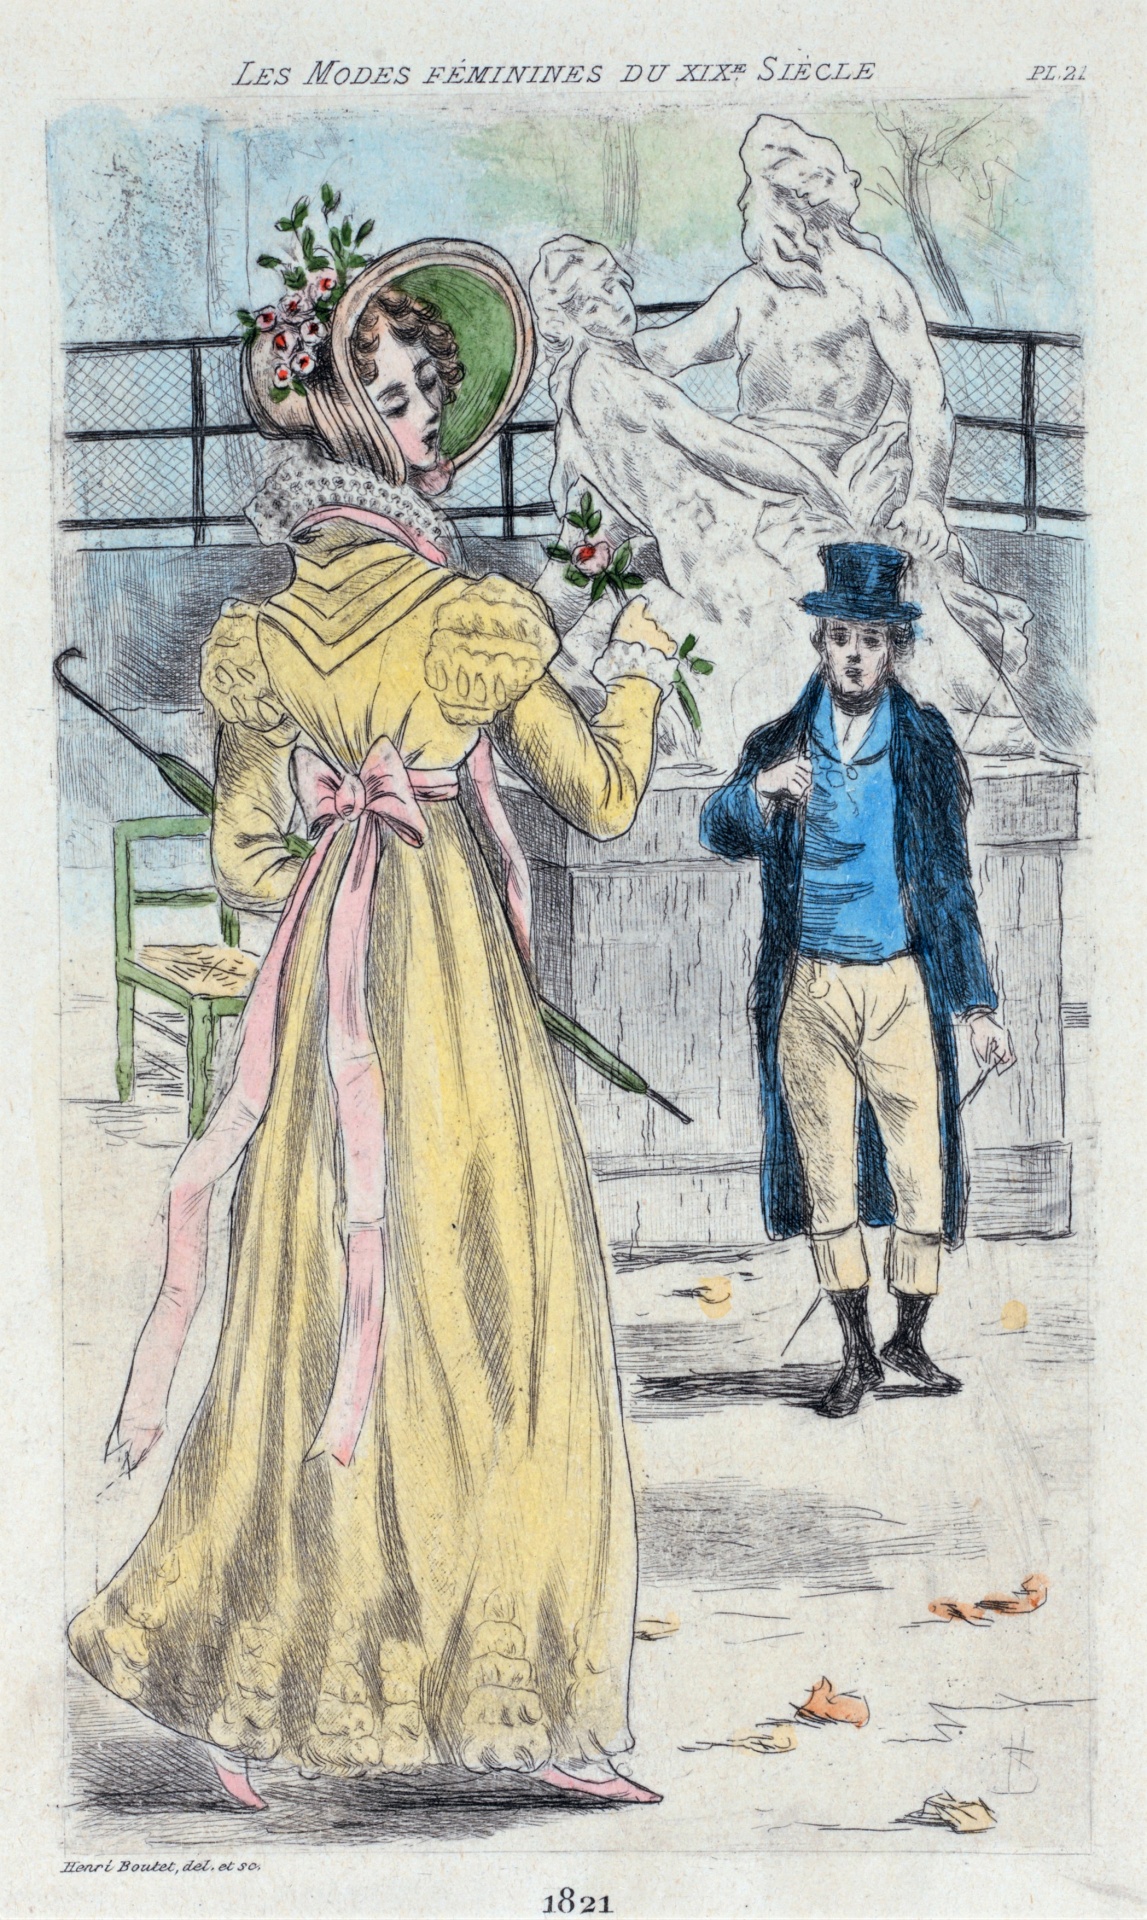 1821 Women's Fashion By Henri Boute